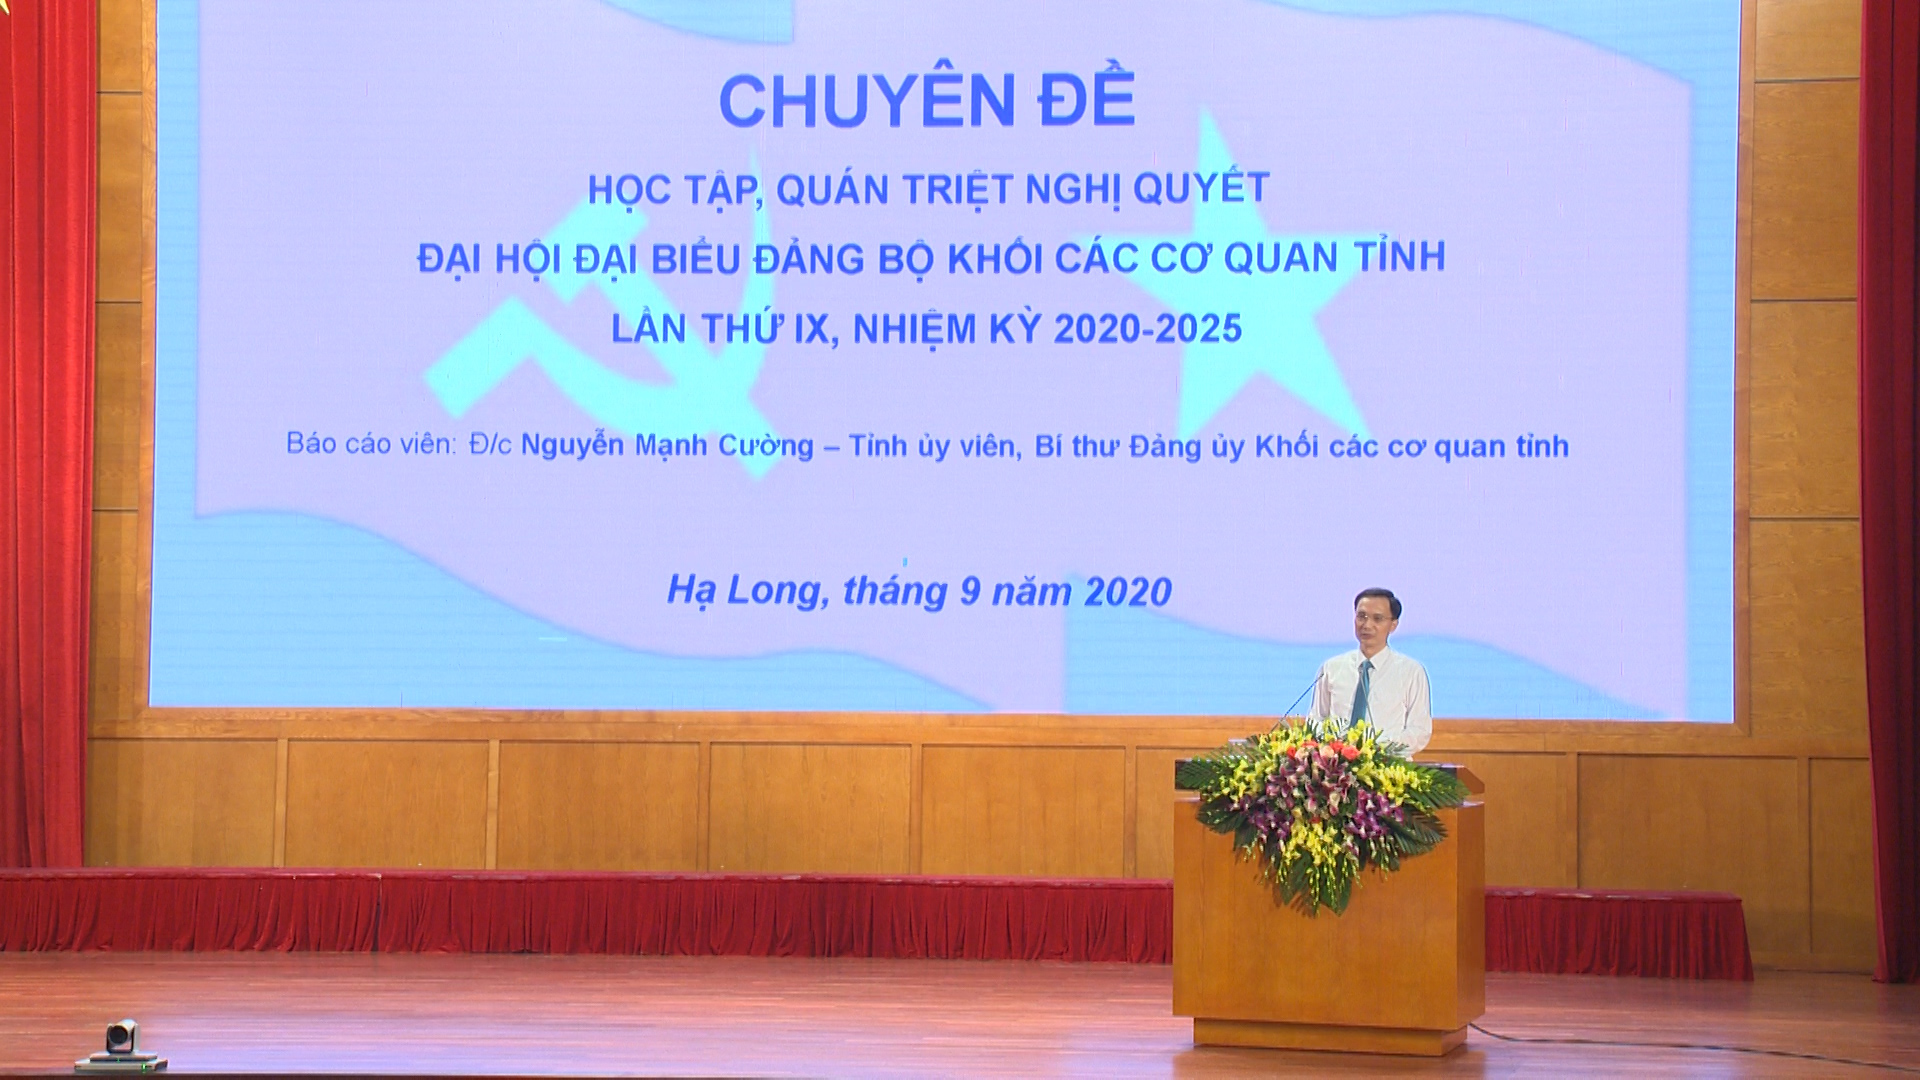 Đồng chí Nguyễn Mạnh Cường, Bí thư Đảng ủy Khối các cơ quan tỉnh quán triệt các nội dung tại hội nghị